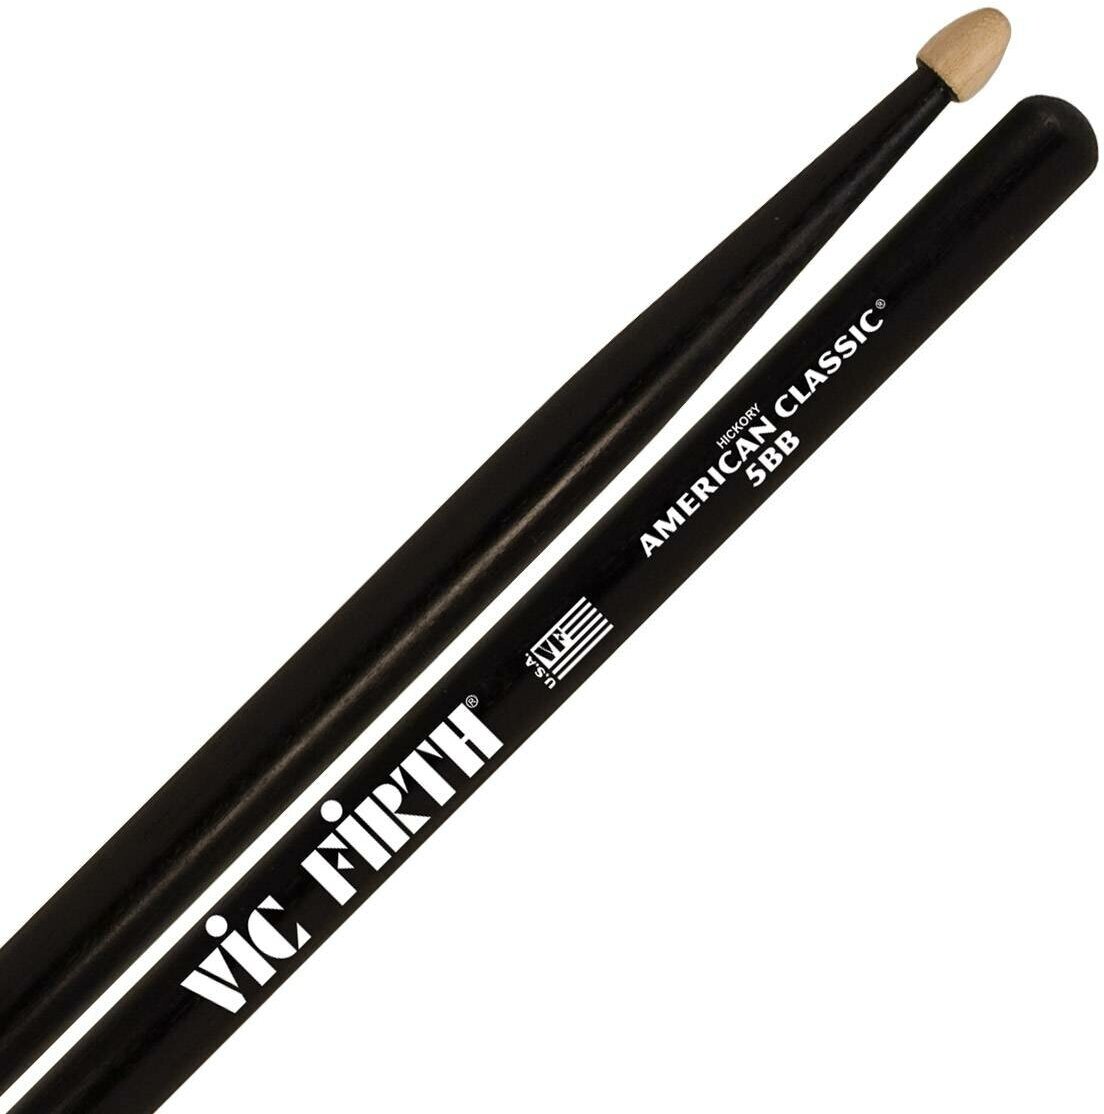 VIC FIRTH 5BB барабанные палочки черного цвета, тип 5B с деревянным наконечником, материал орех, длина 16", диаметр 0,595", серия American Classic